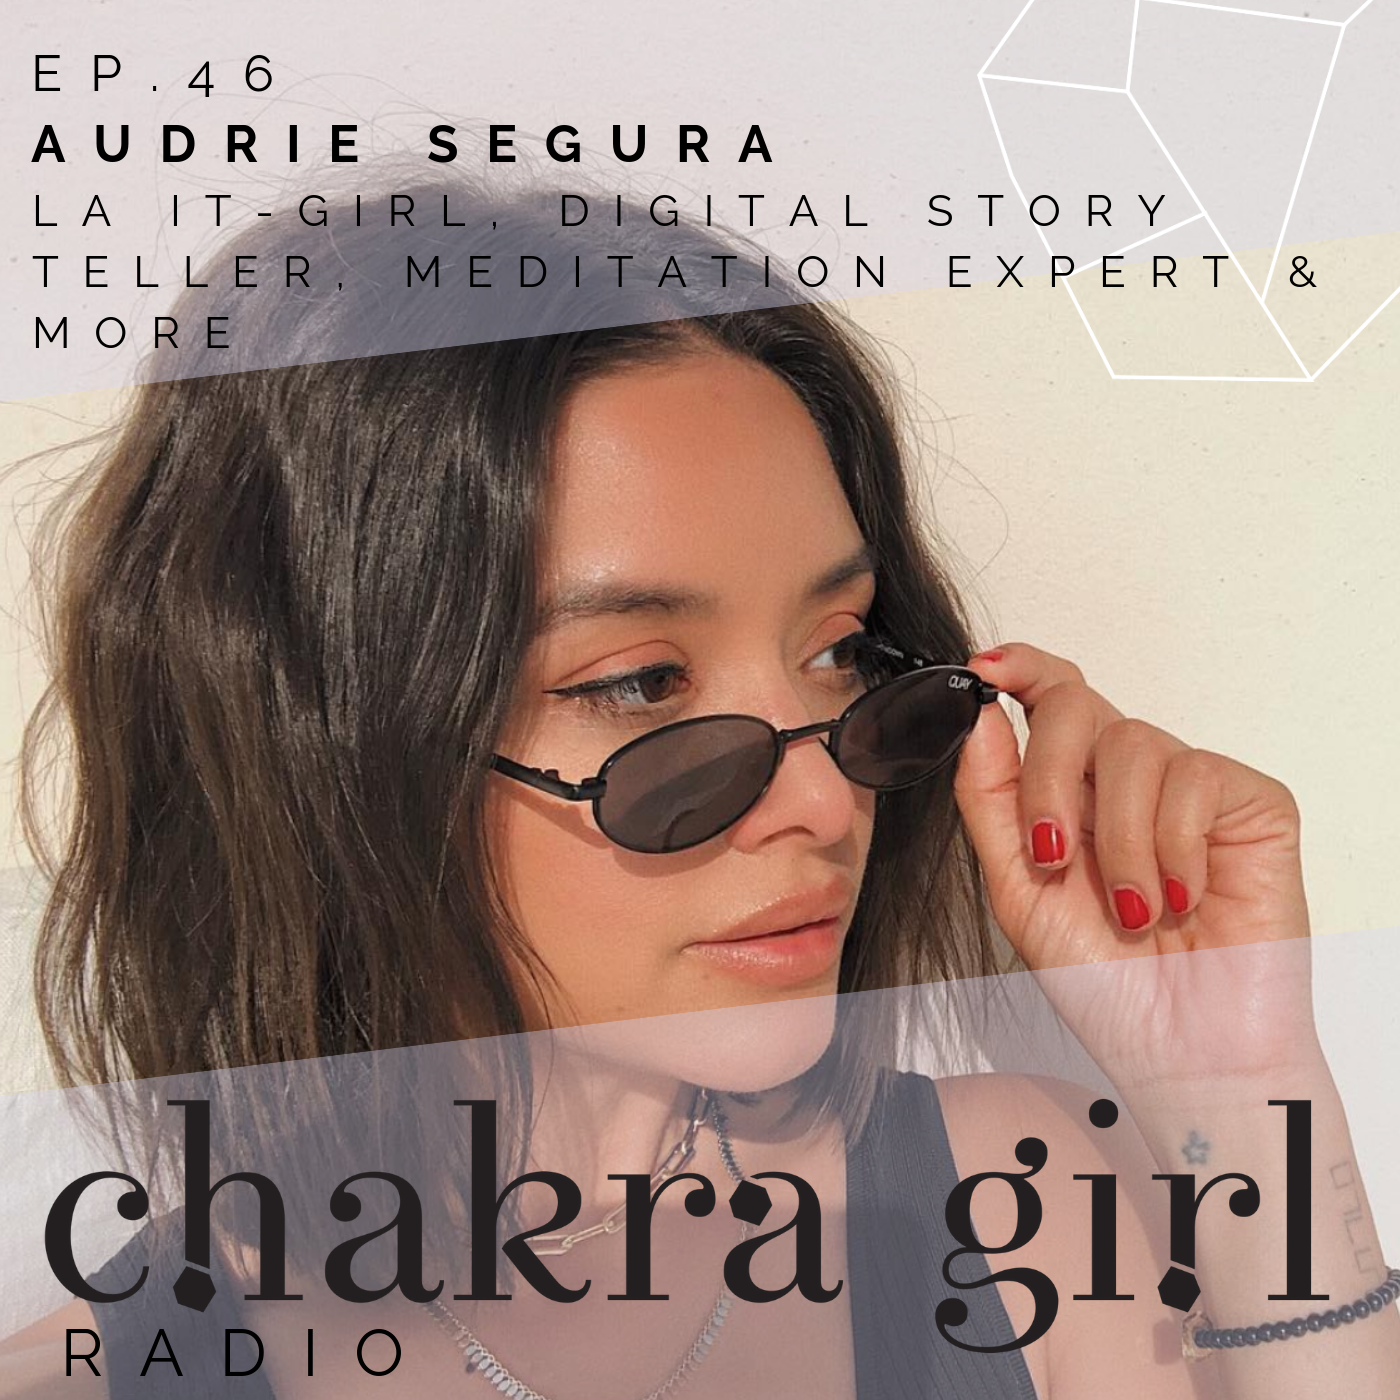 Audrie+Segura+CHAKRA+GIRL+RADIO.png